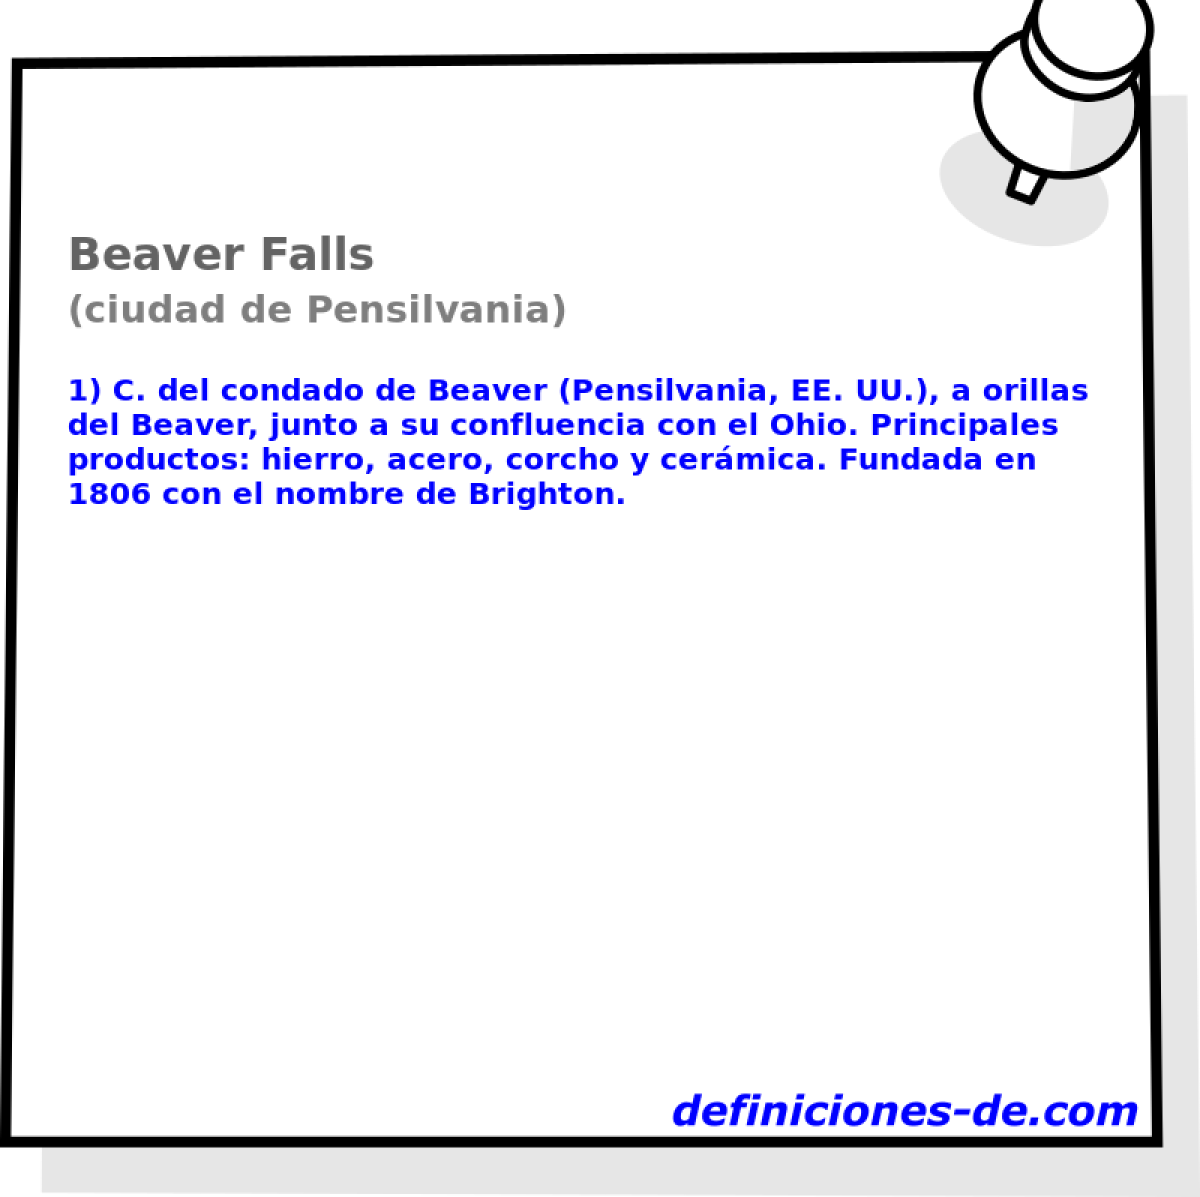 Beaver Falls (ciudad de Pensilvania)